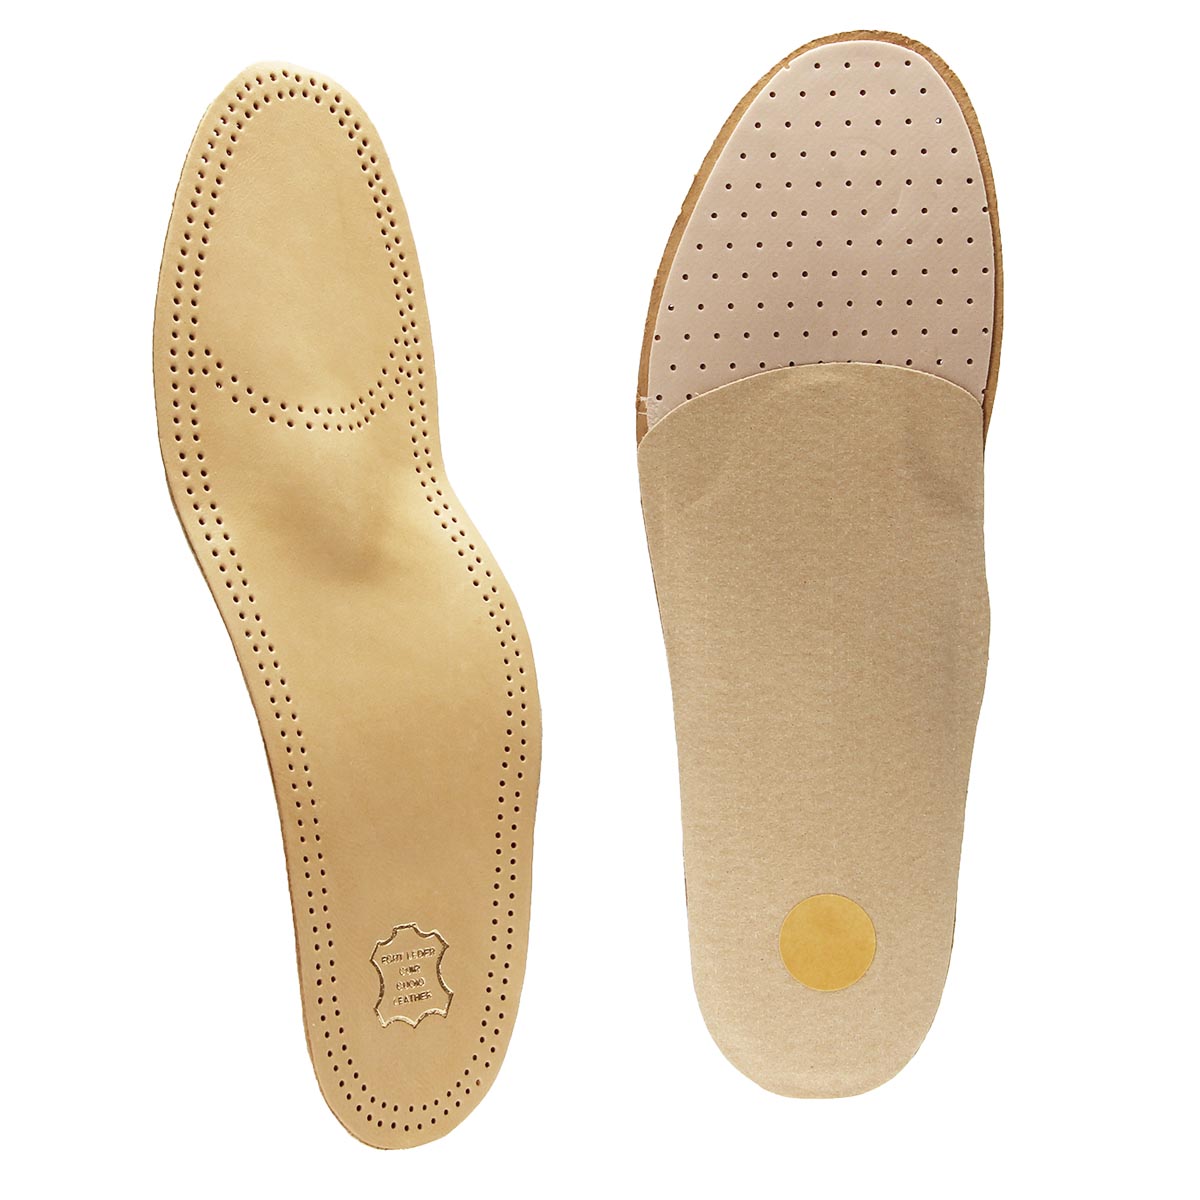 Premium Luxus Fußbett Einlegesohlen Leder Schuheinlagen orthopädisch 